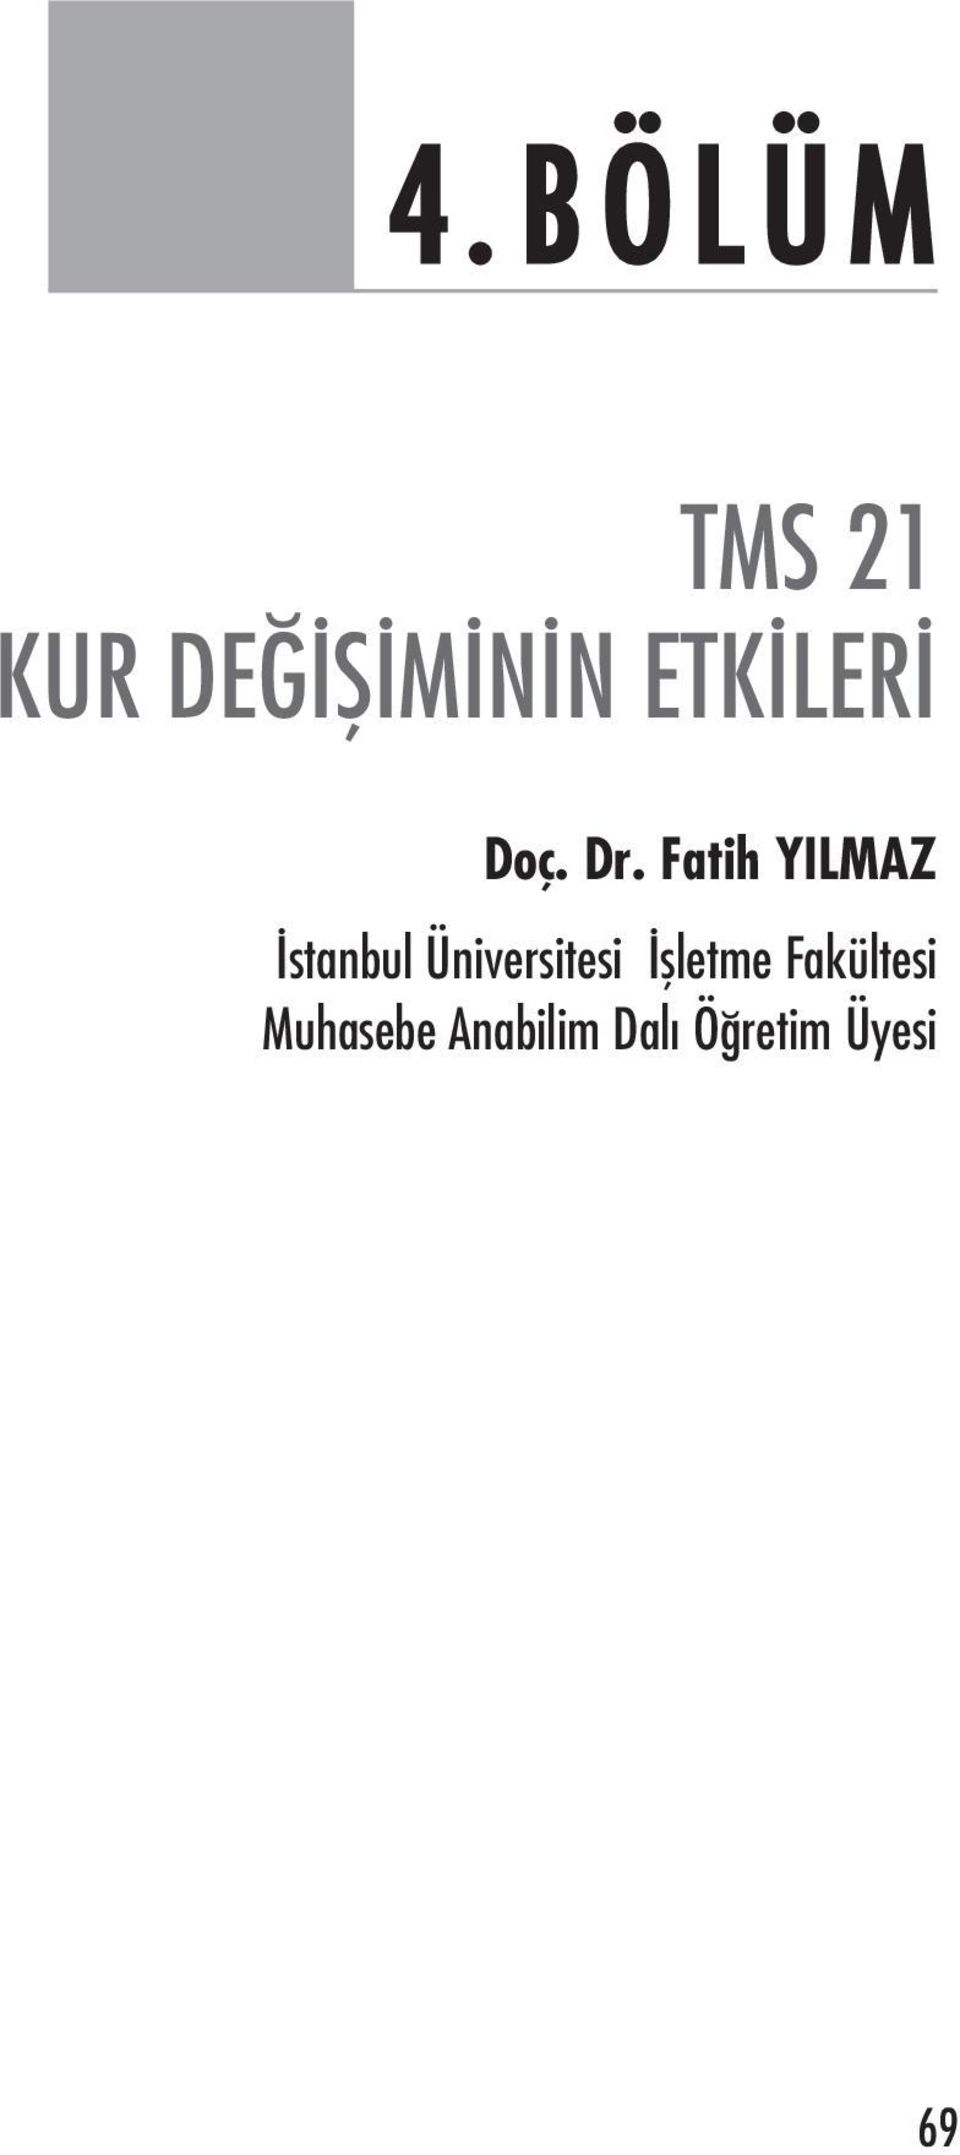 Fatih YILMAZ stanbul Üniversitesi